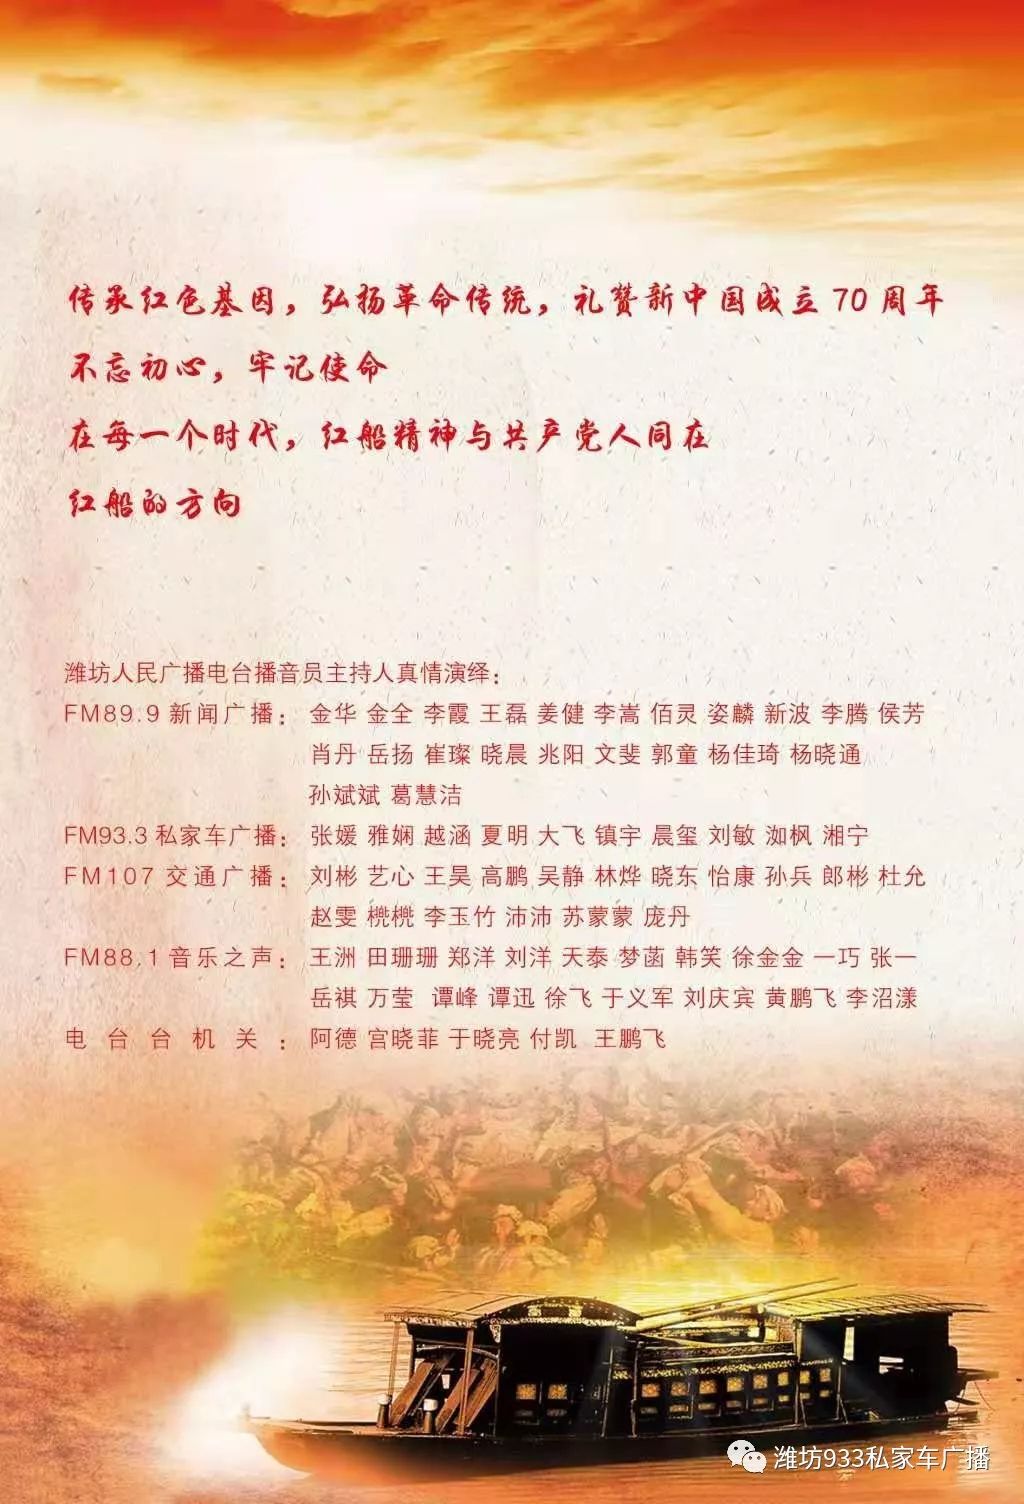 9月20日红船的方向潍坊市庆祝中华人民共和国成立70周年大型红色廉政